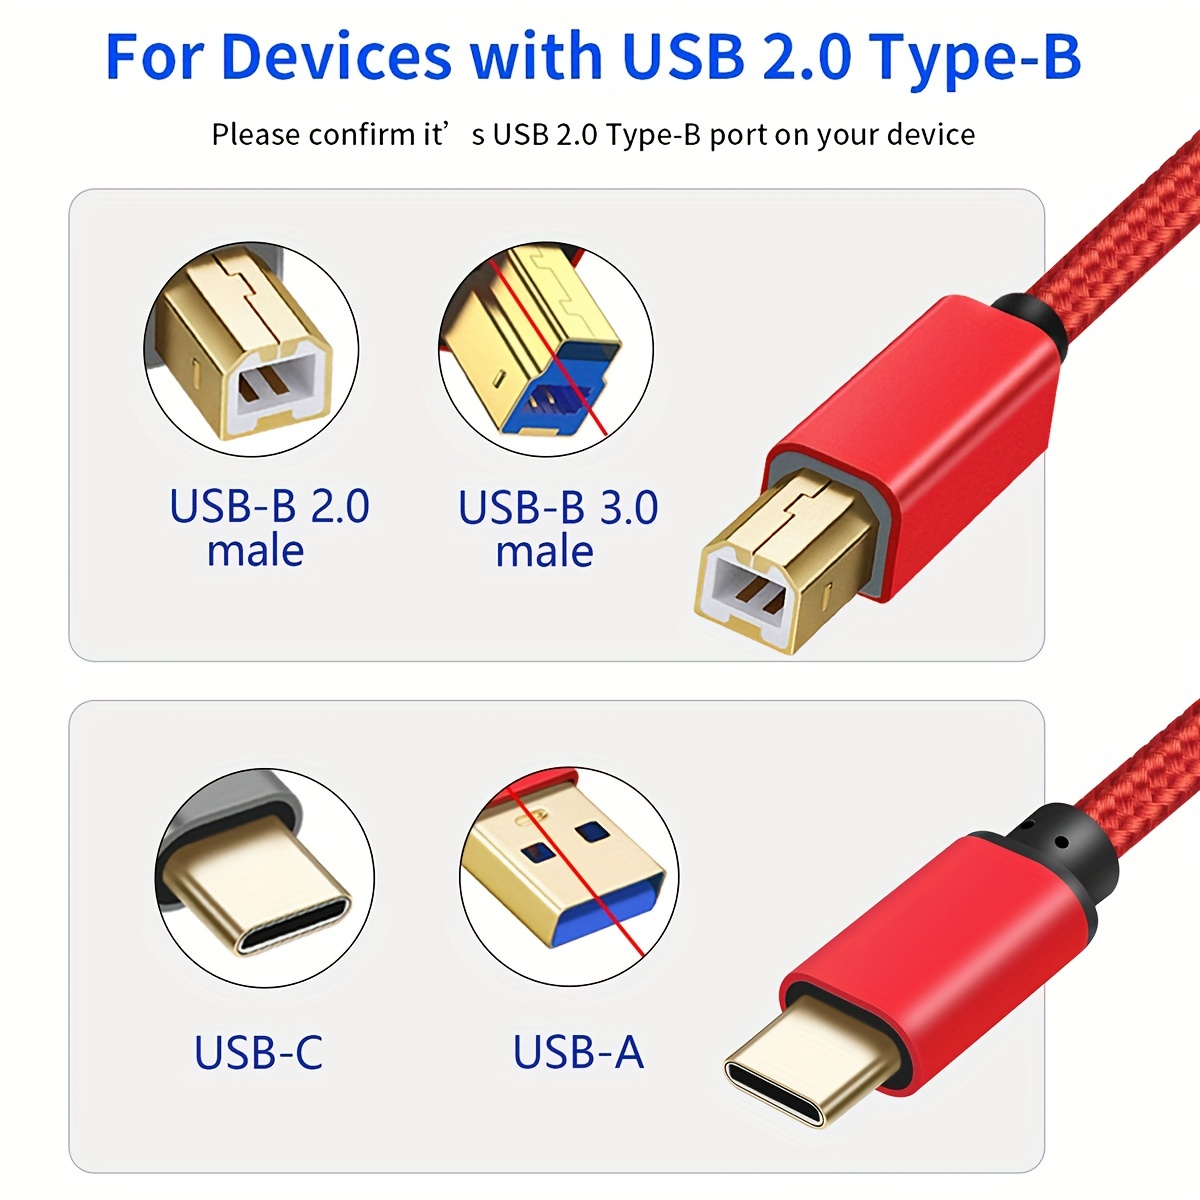 Midi Usb B Cable, Midi Usb C Cable, Midi Usb Cable Ipad